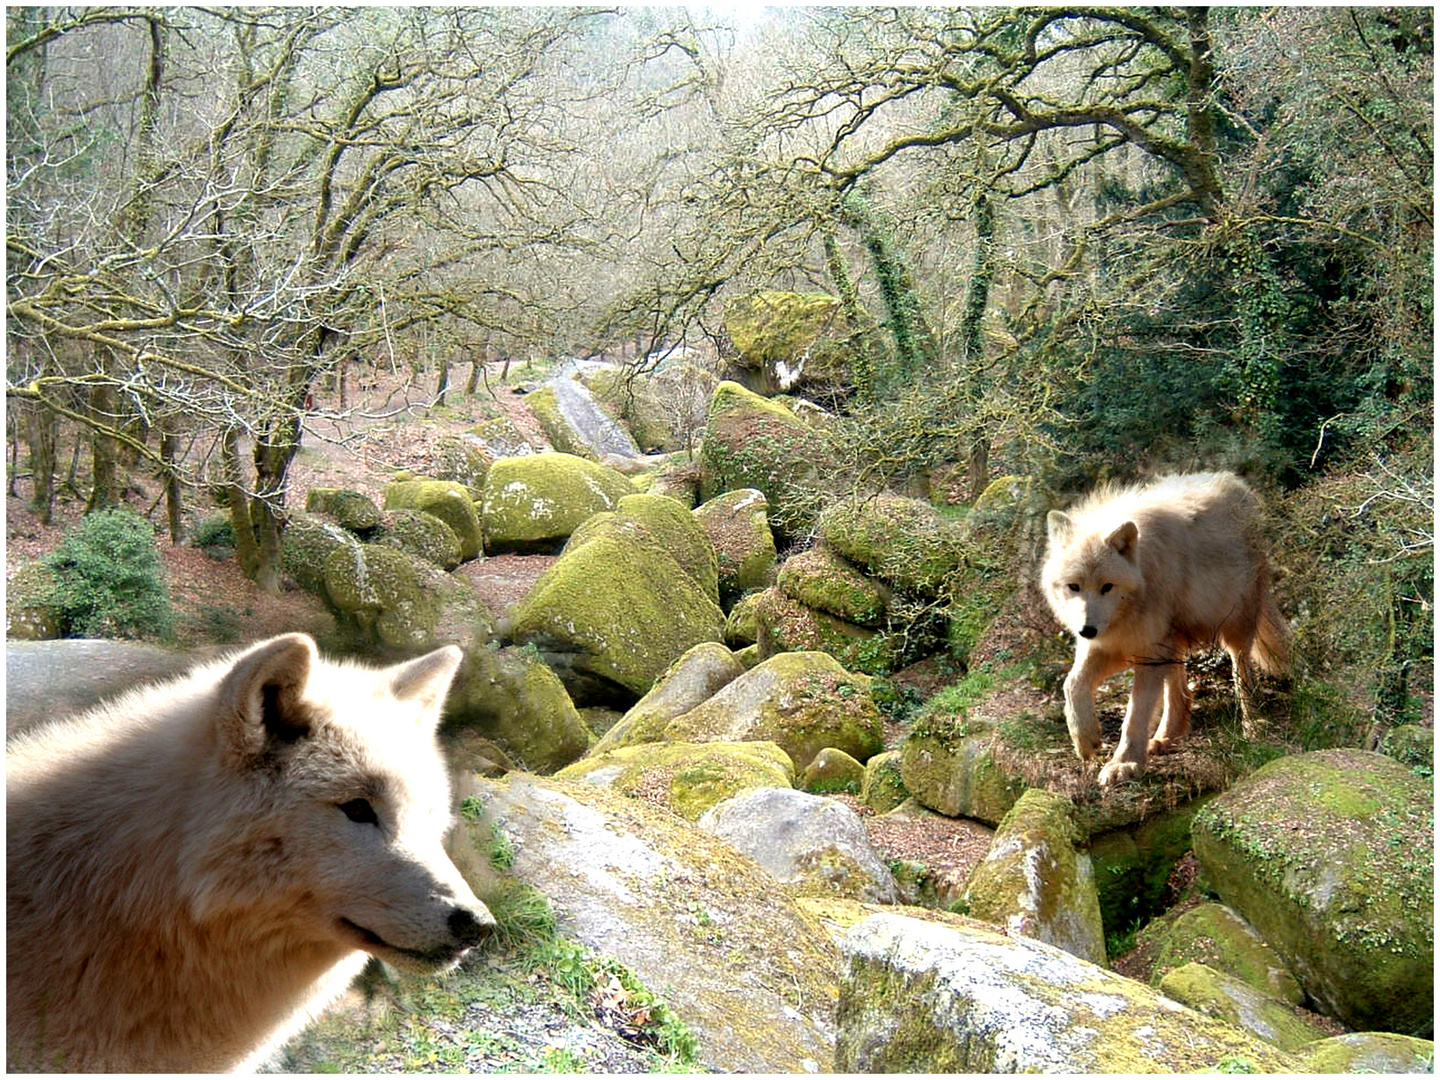 Wölfe in der Bretagne entdeckt! ;o)  Oder nur ein Traum?